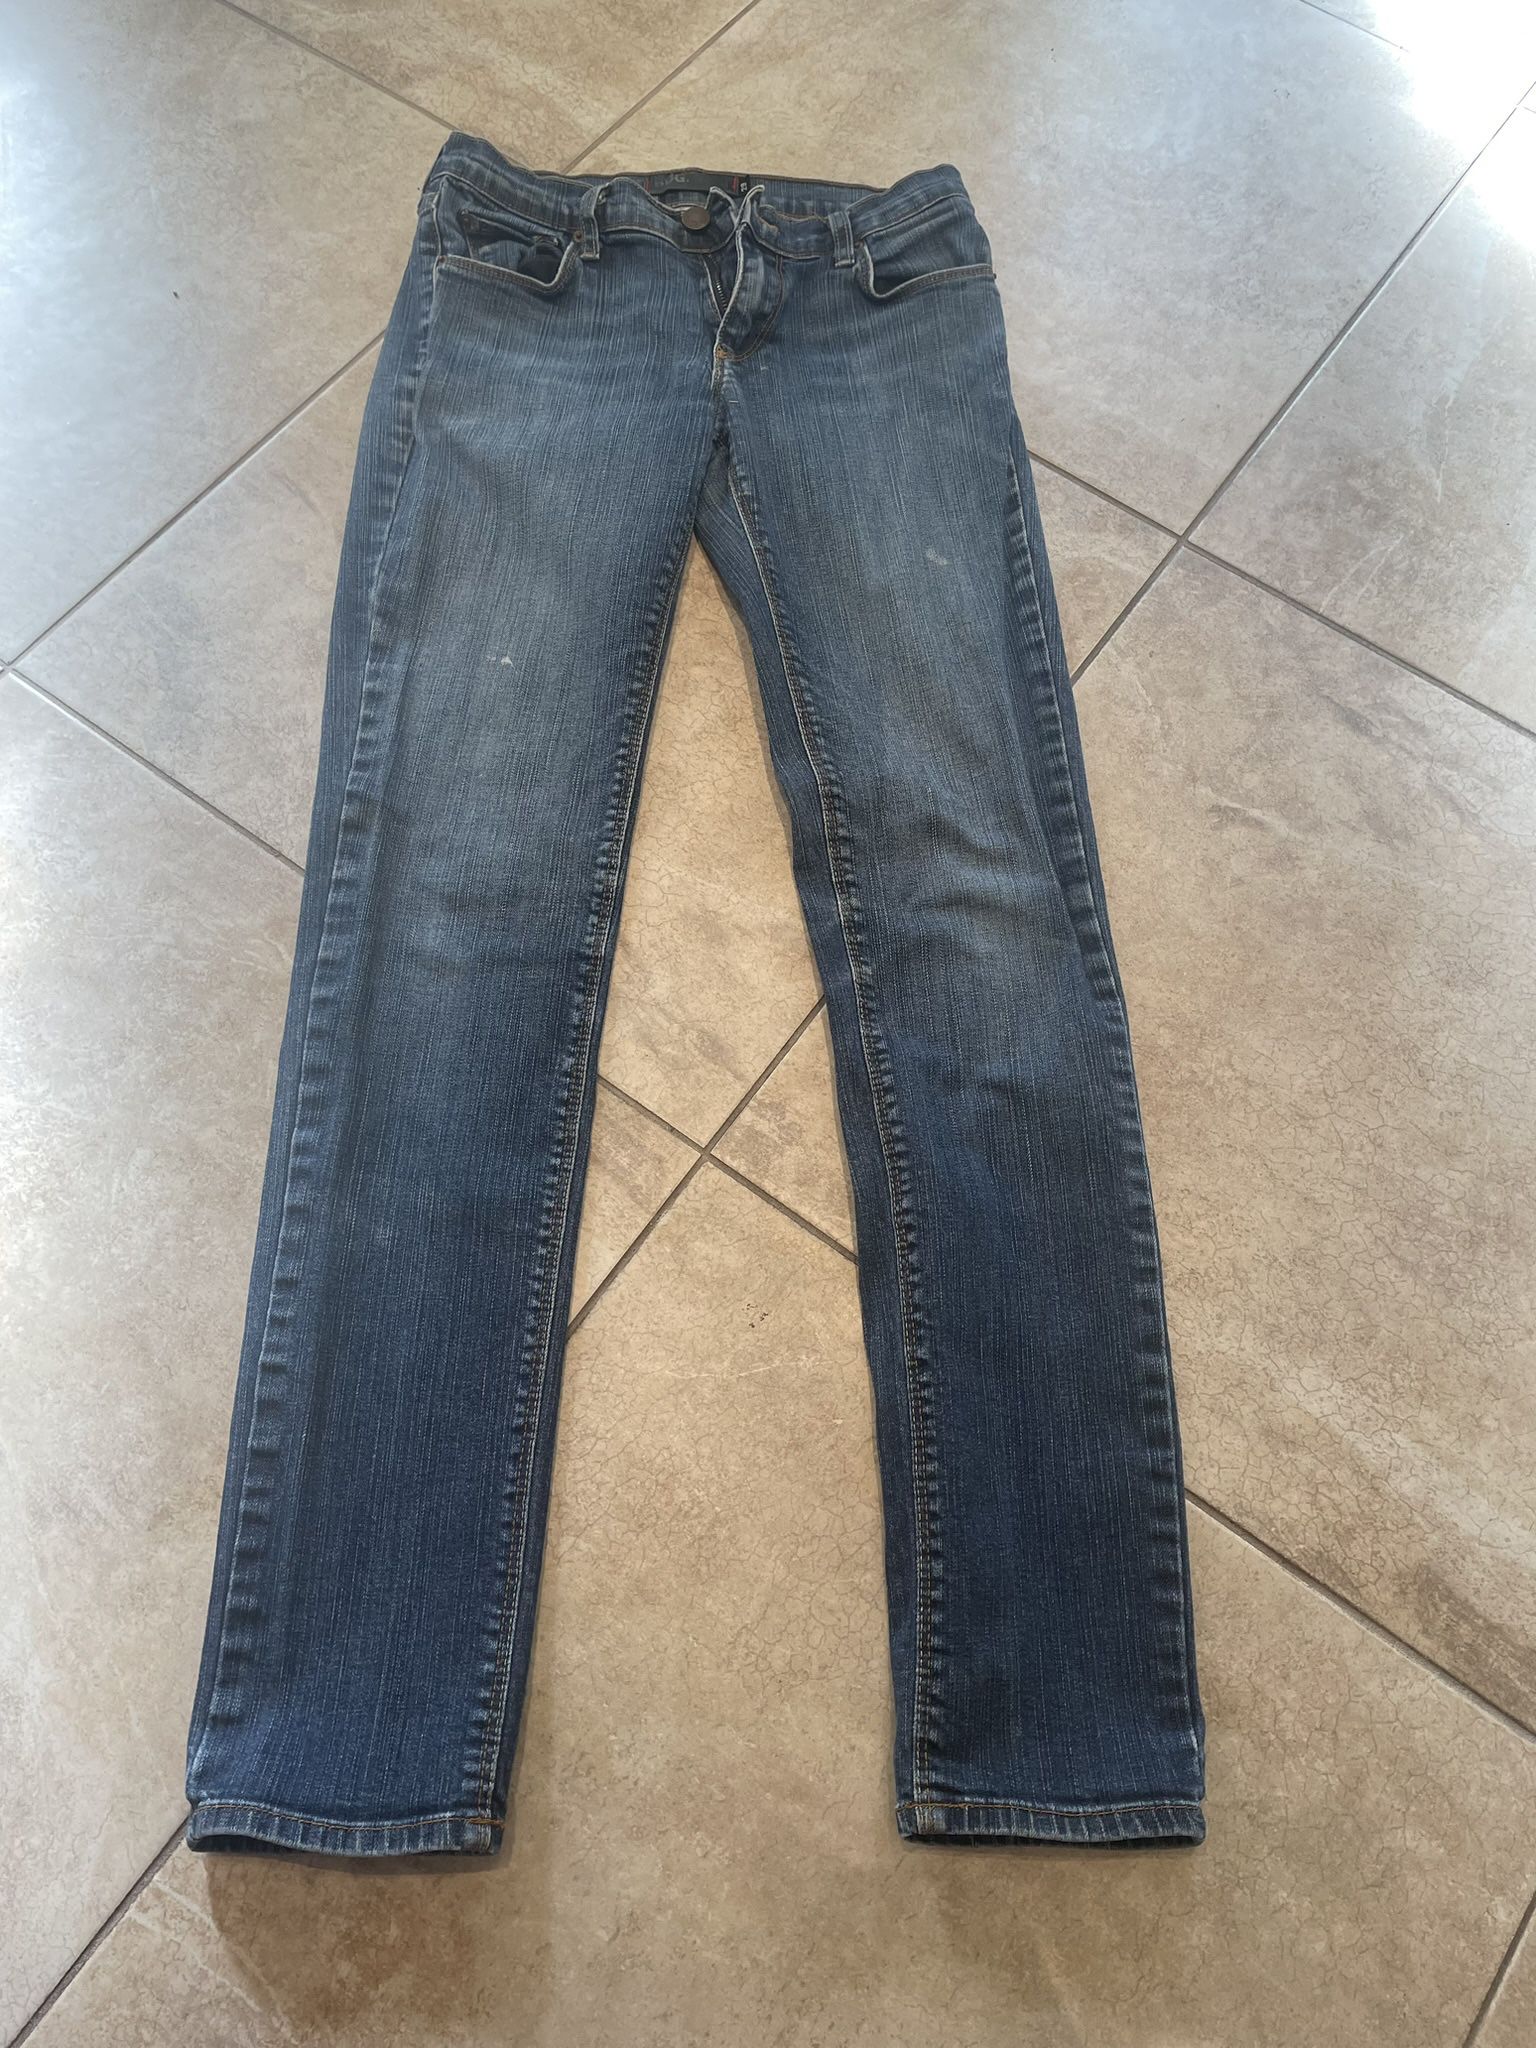 Women's BDG jeans. Size 29.